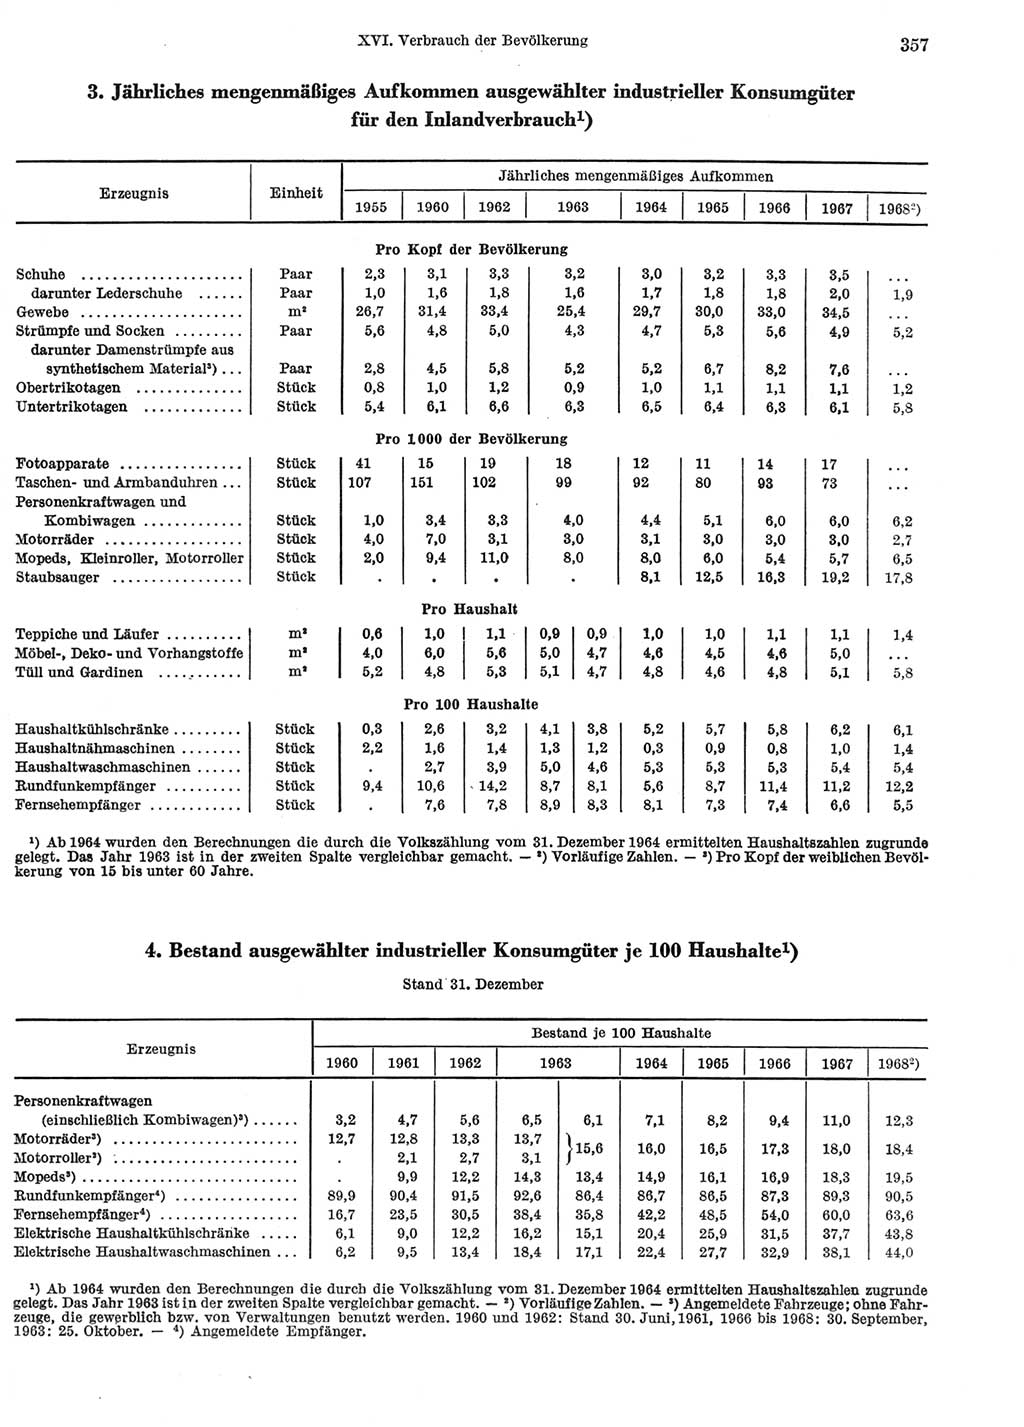 Statistisches Jahrbuch der Deutschen Demokratischen Republik (DDR) 1969, Seite 357 (Stat. Jb. DDR 1969, S. 357)